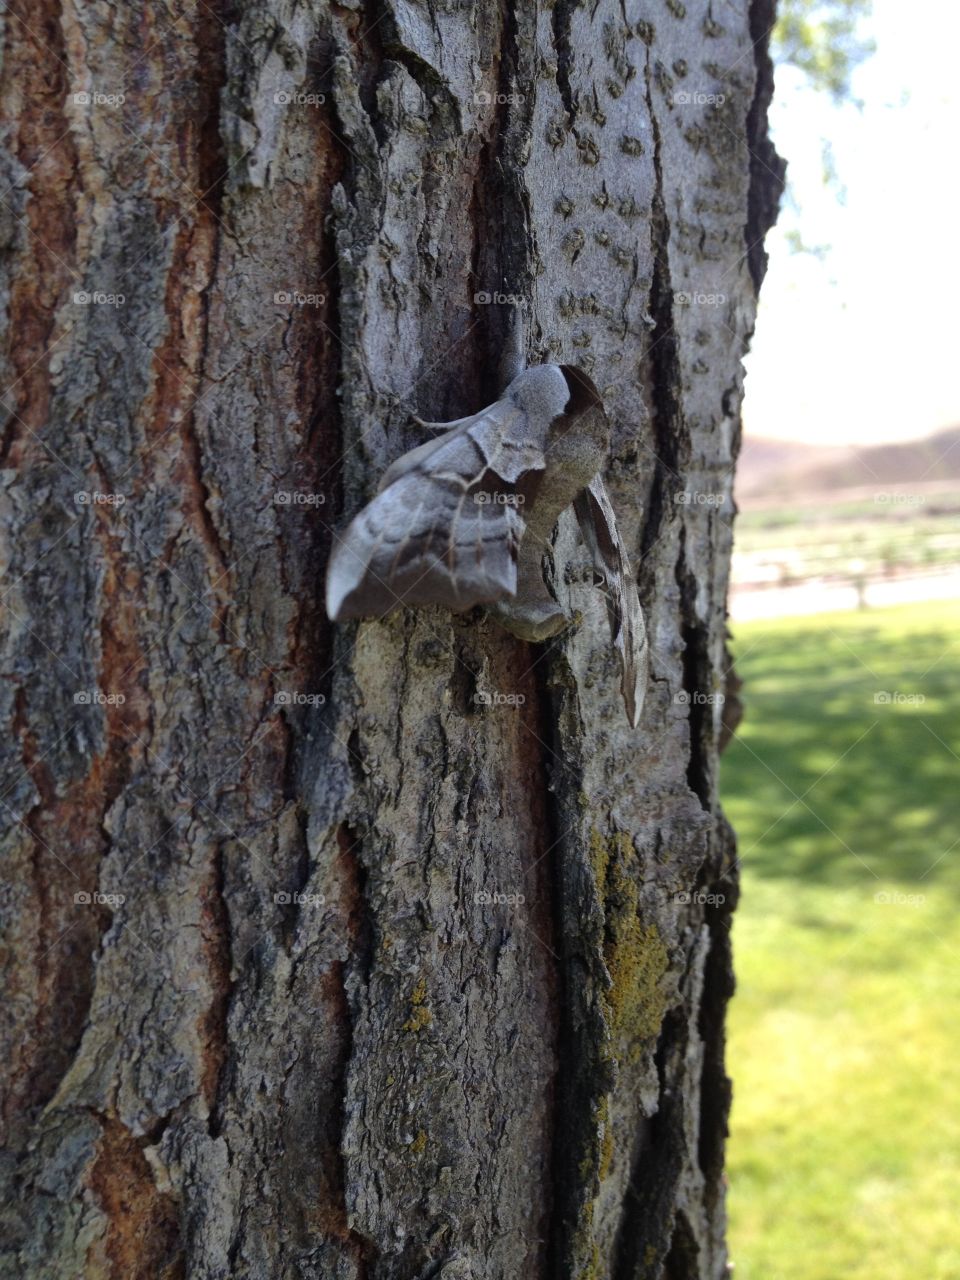 Bug on a tree